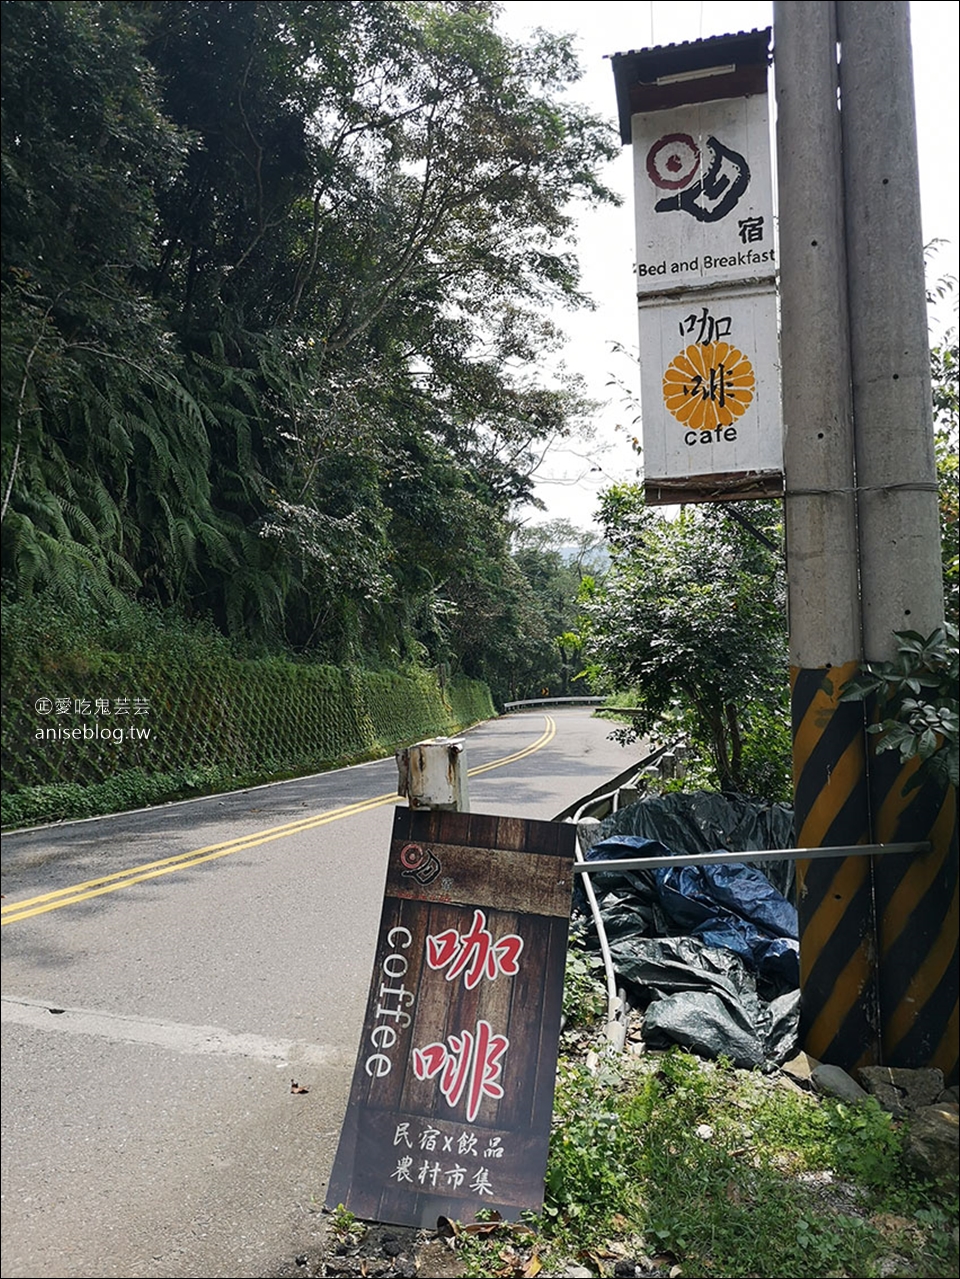 日月潭明宿 vs 阿爸食堂 vs 日月潭湖の怪物咖啡，有著全台灣最爆笑的民宿主人